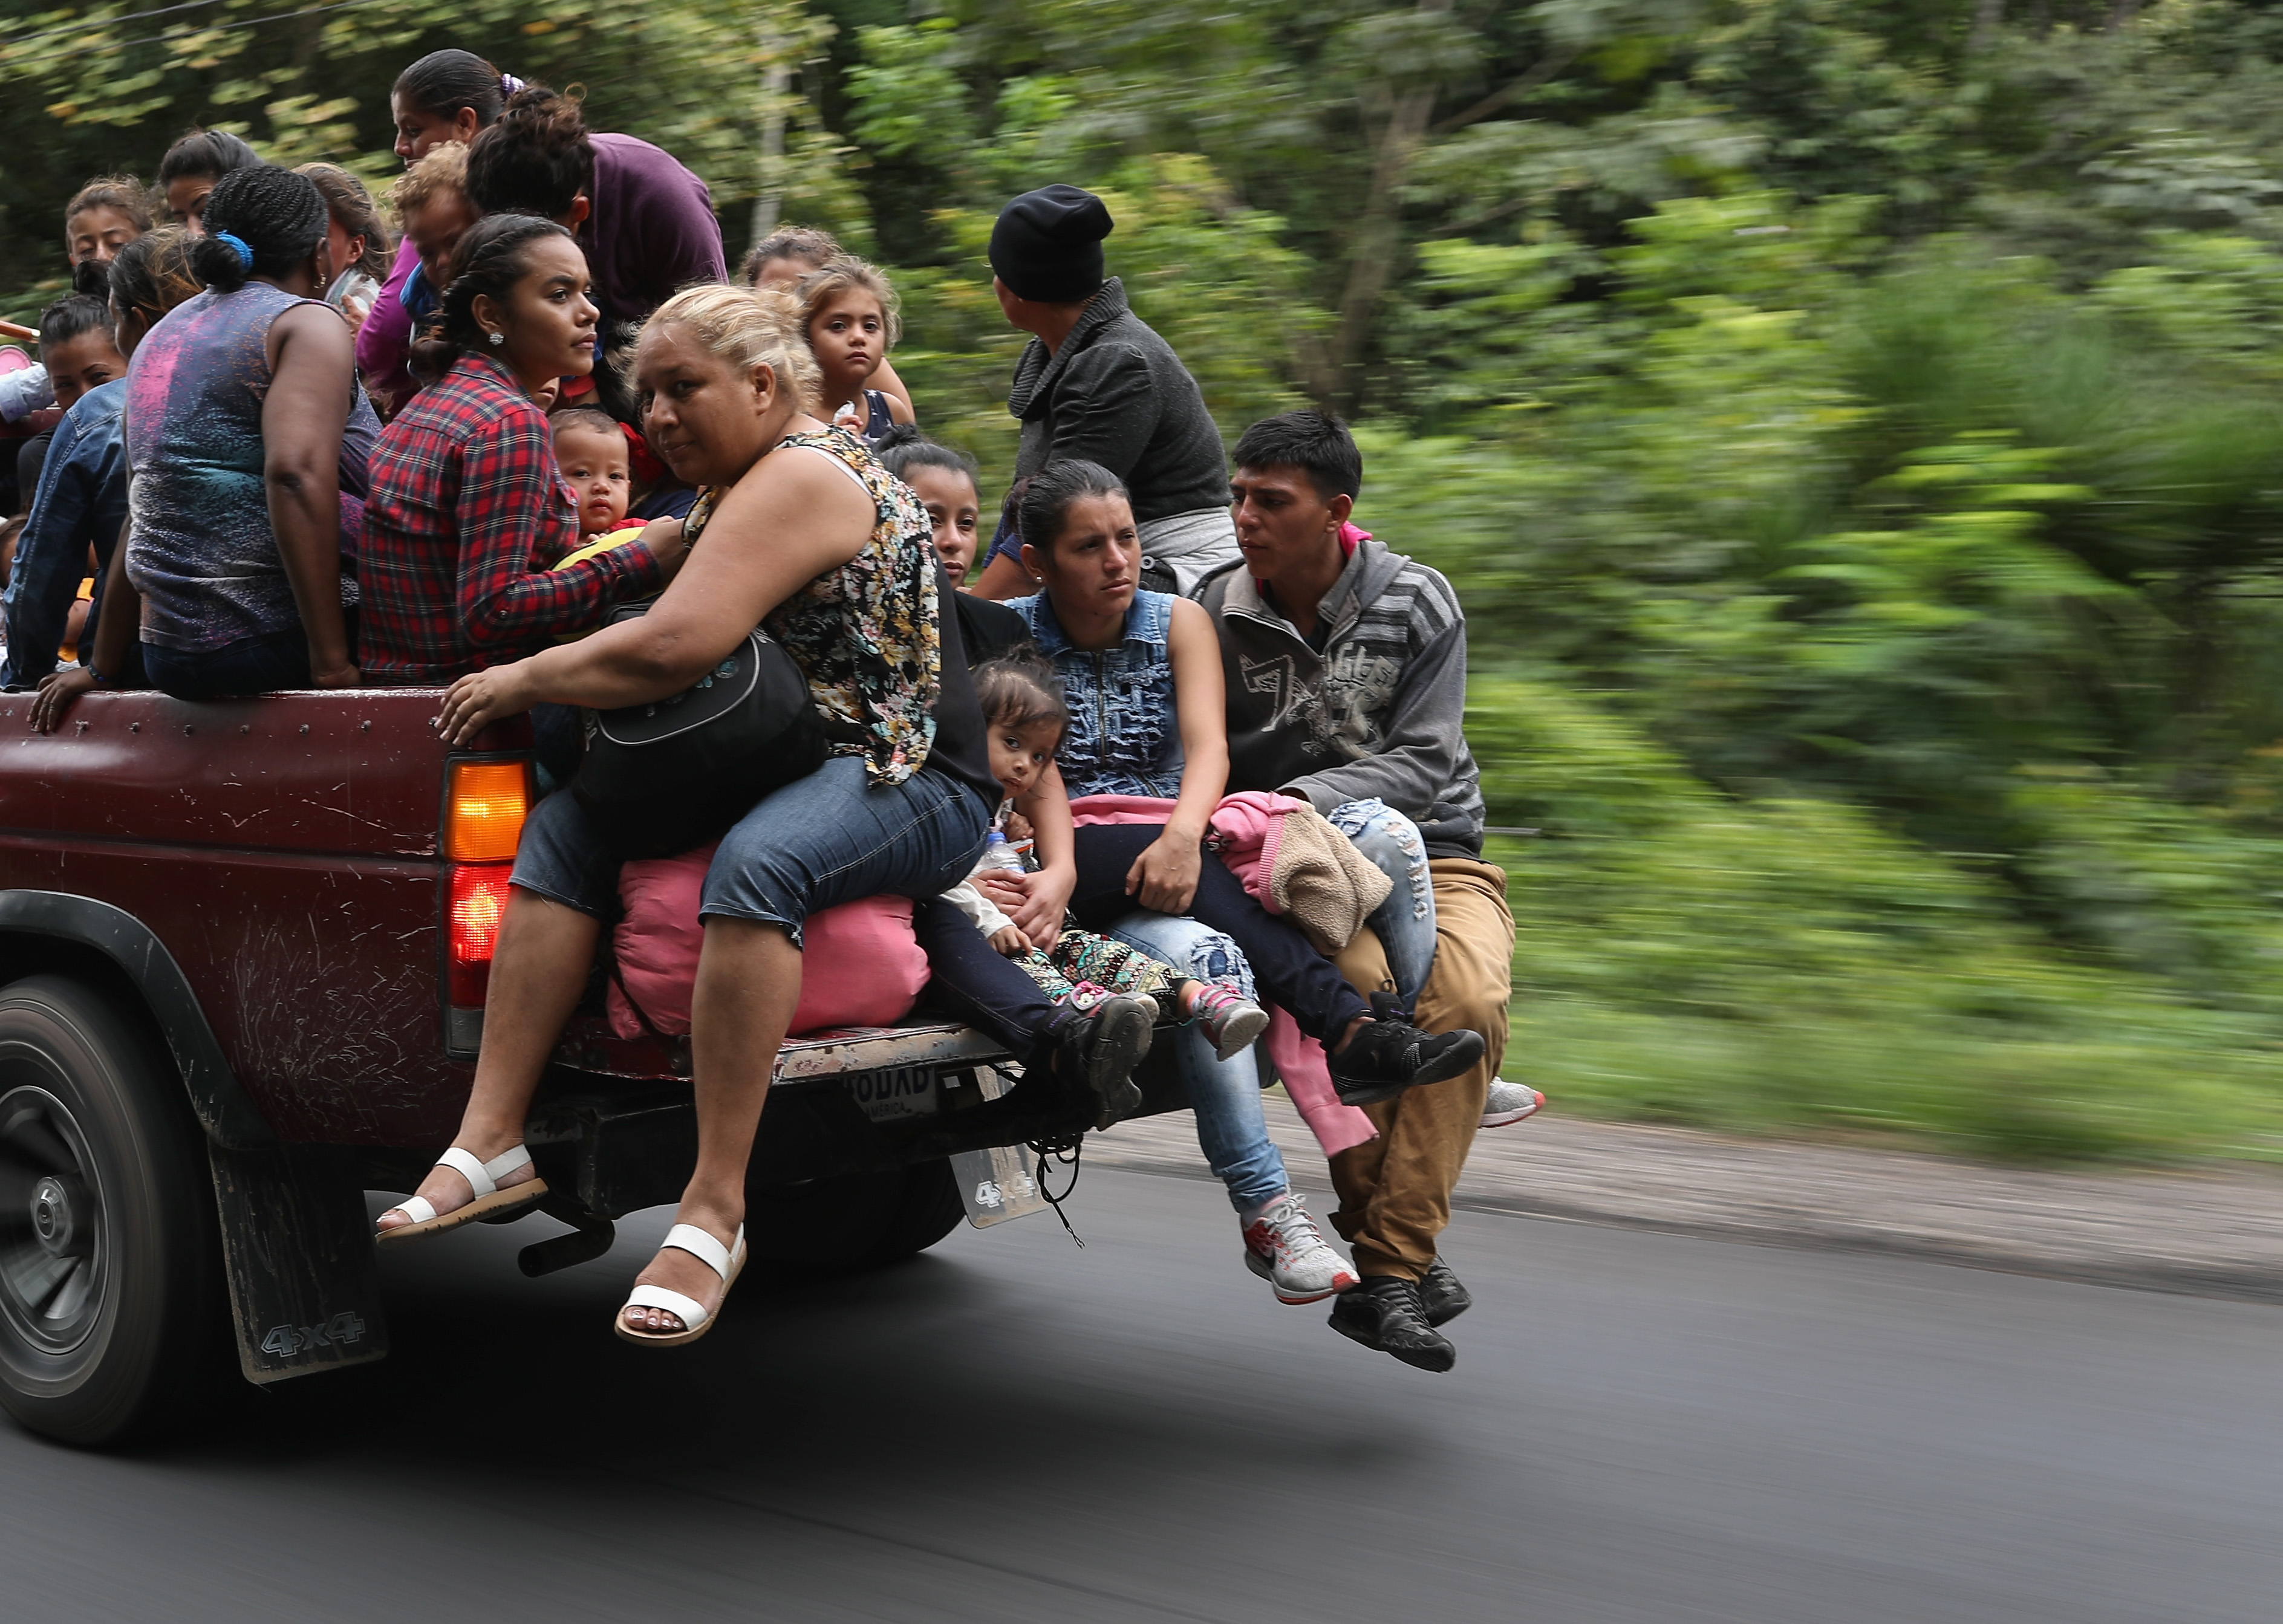 En imágenes: la caravana migrante que busca llegar a Estados Unidos 